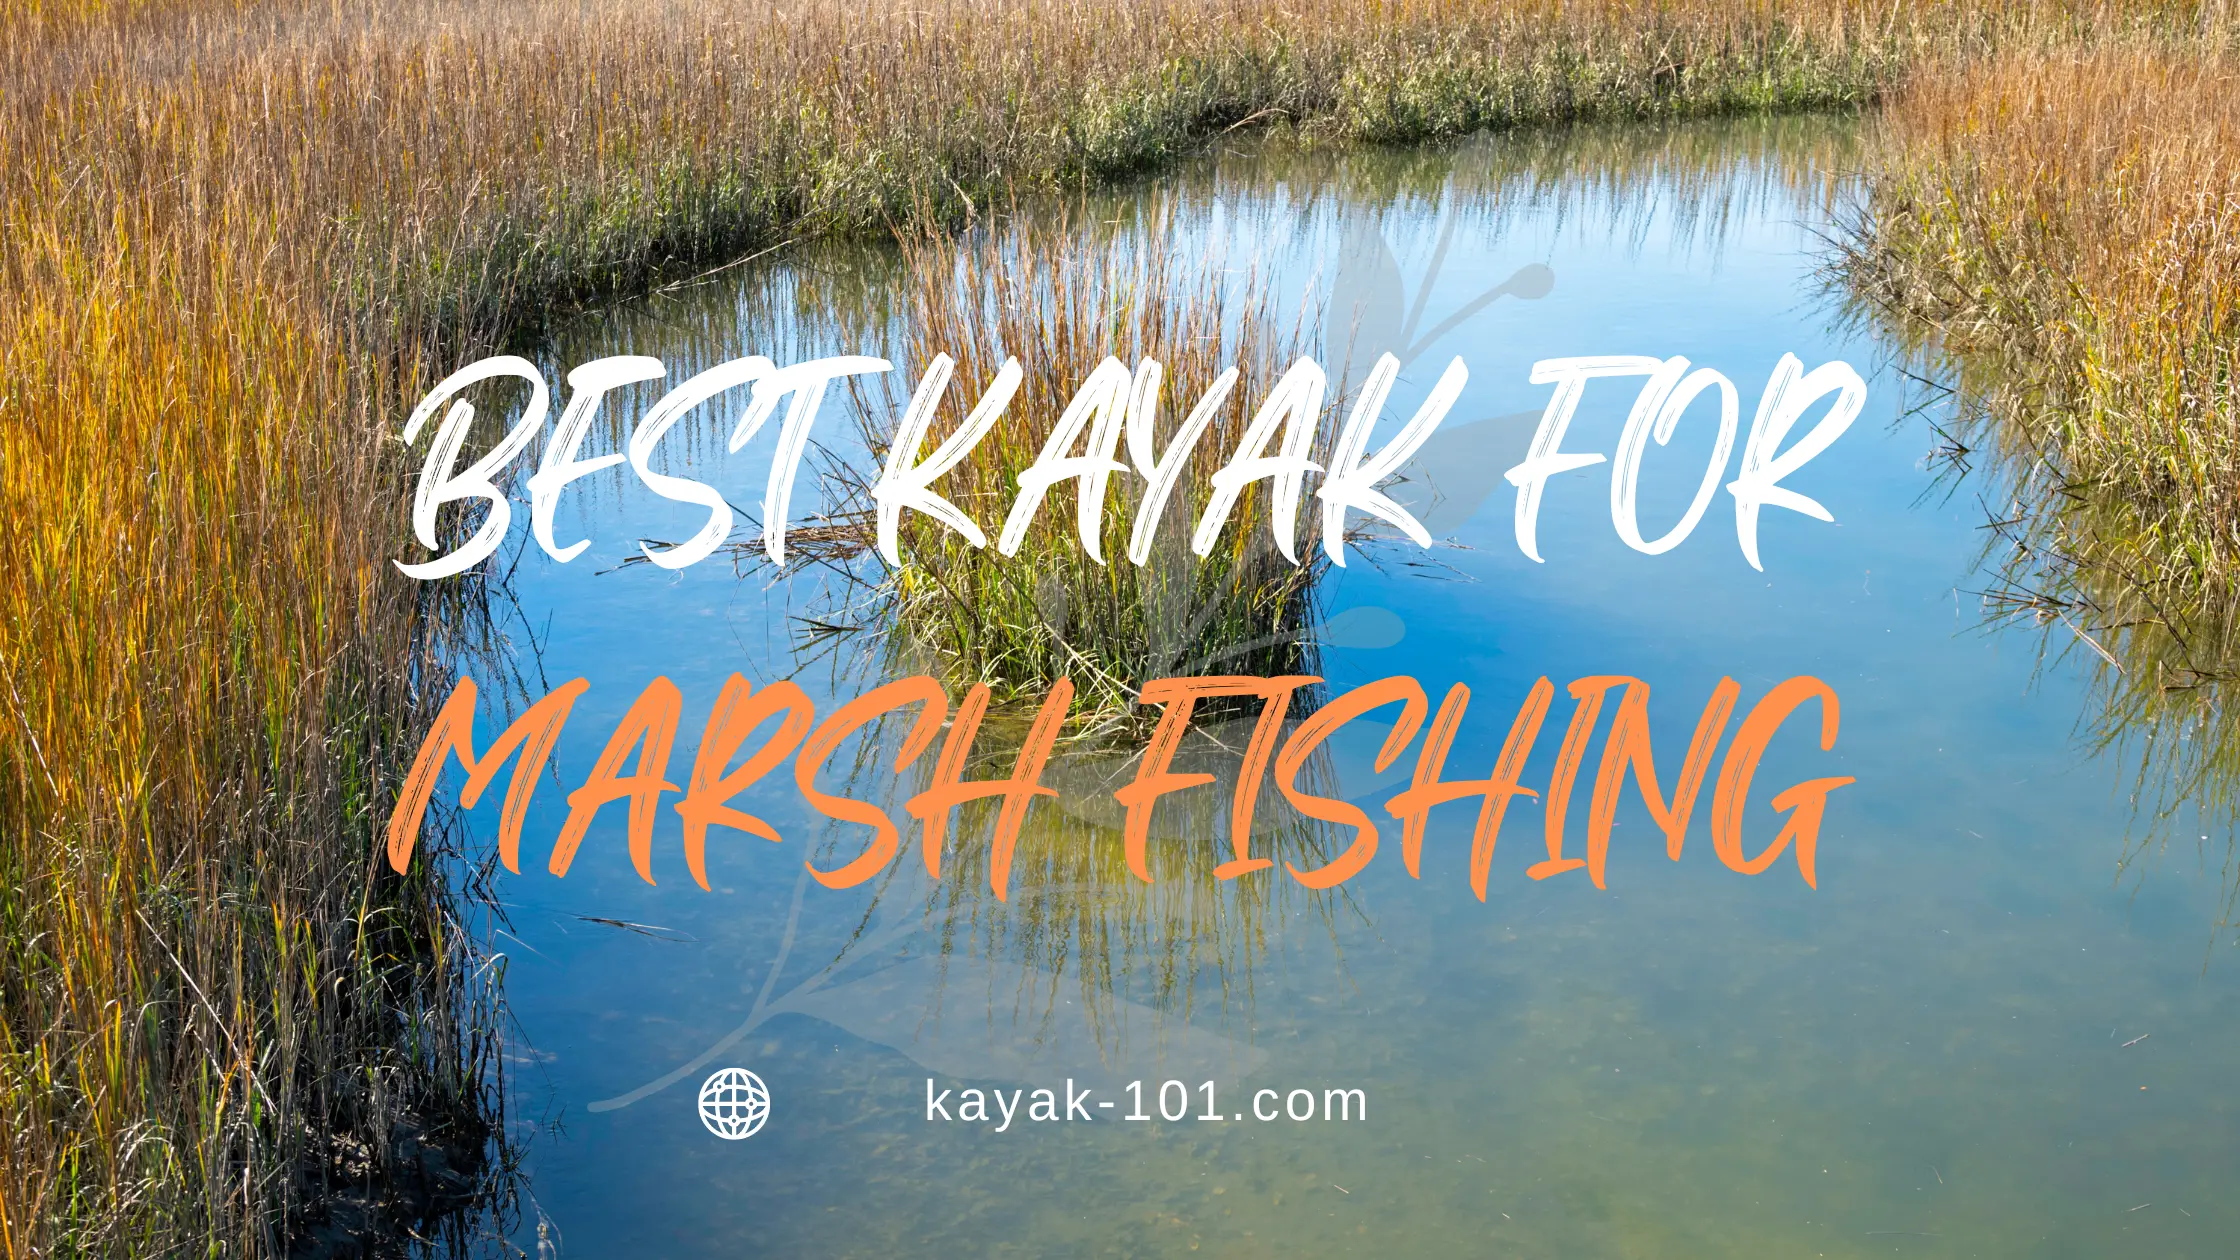 Best kayak for marsh fishing